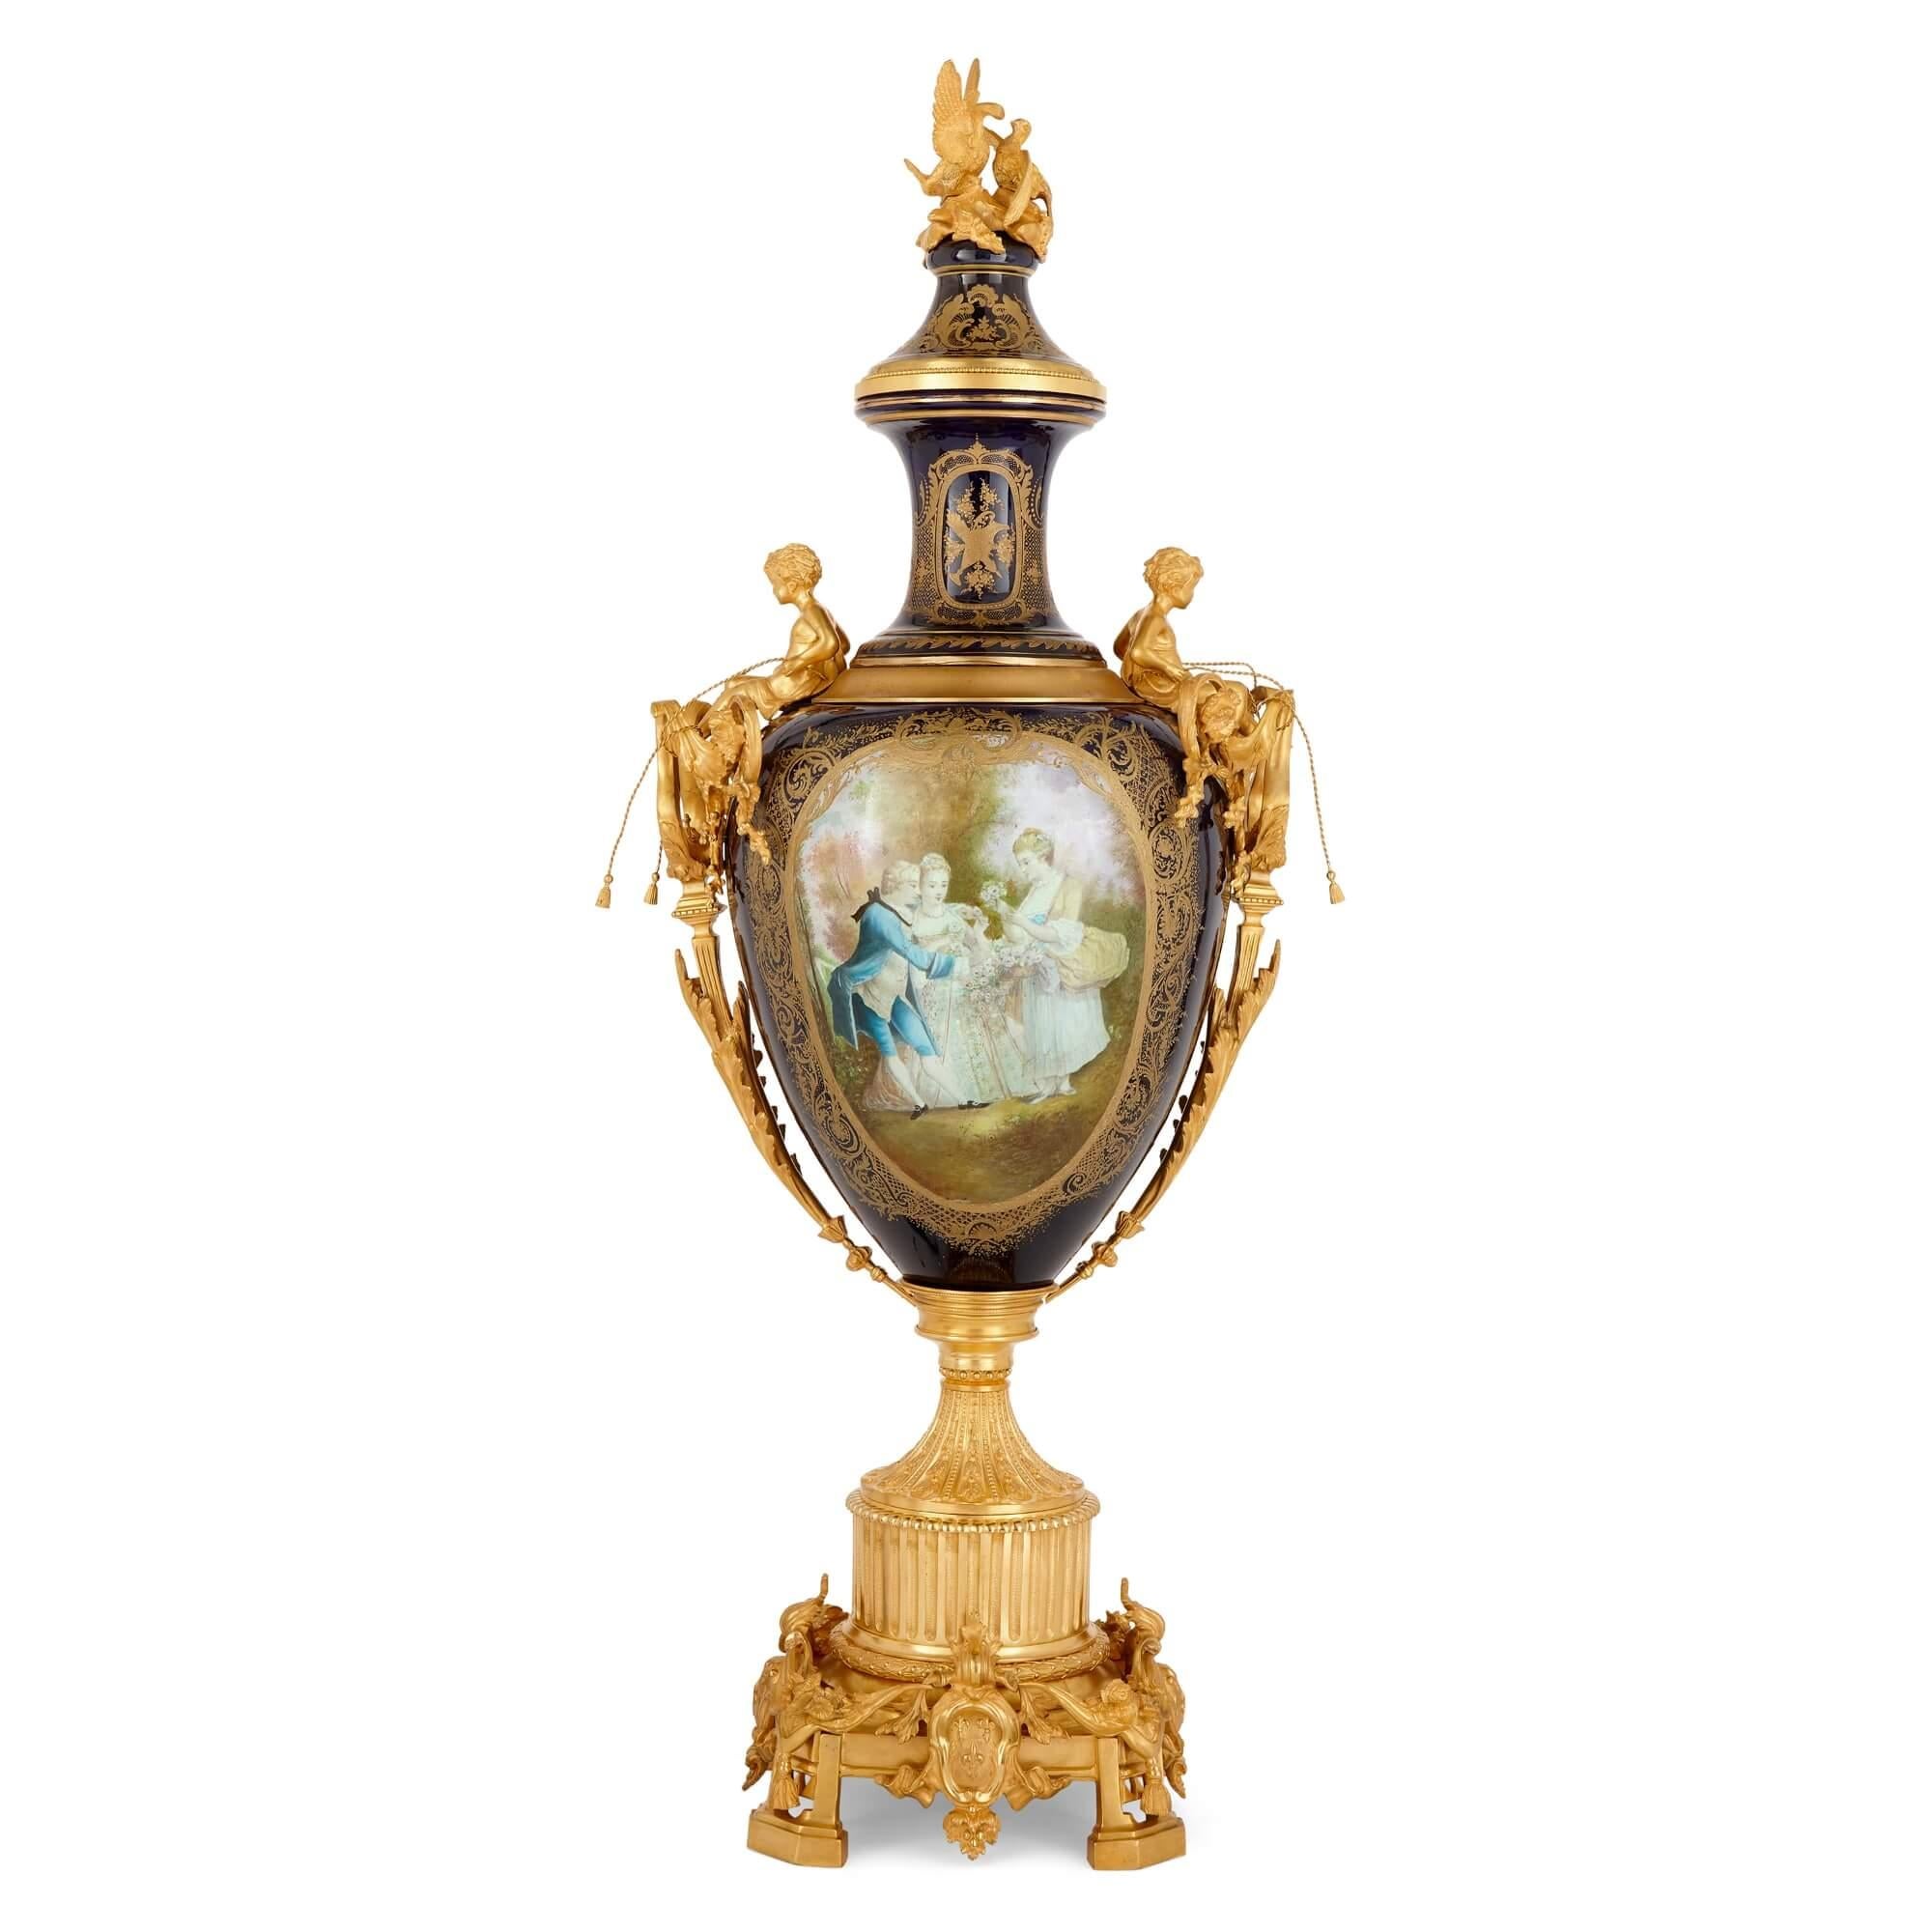 Grand vase en porcelaine de style Sèvres, monté sur bronze doré, avec piédestal.
Français, début du 20e siècle
Vase : hauteur 162cm, largeur 63cm, profondeur 48cm
Support : hauteur 66cm, largeur 48cm, profondeur 48cm

Ce vase en porcelaine de style